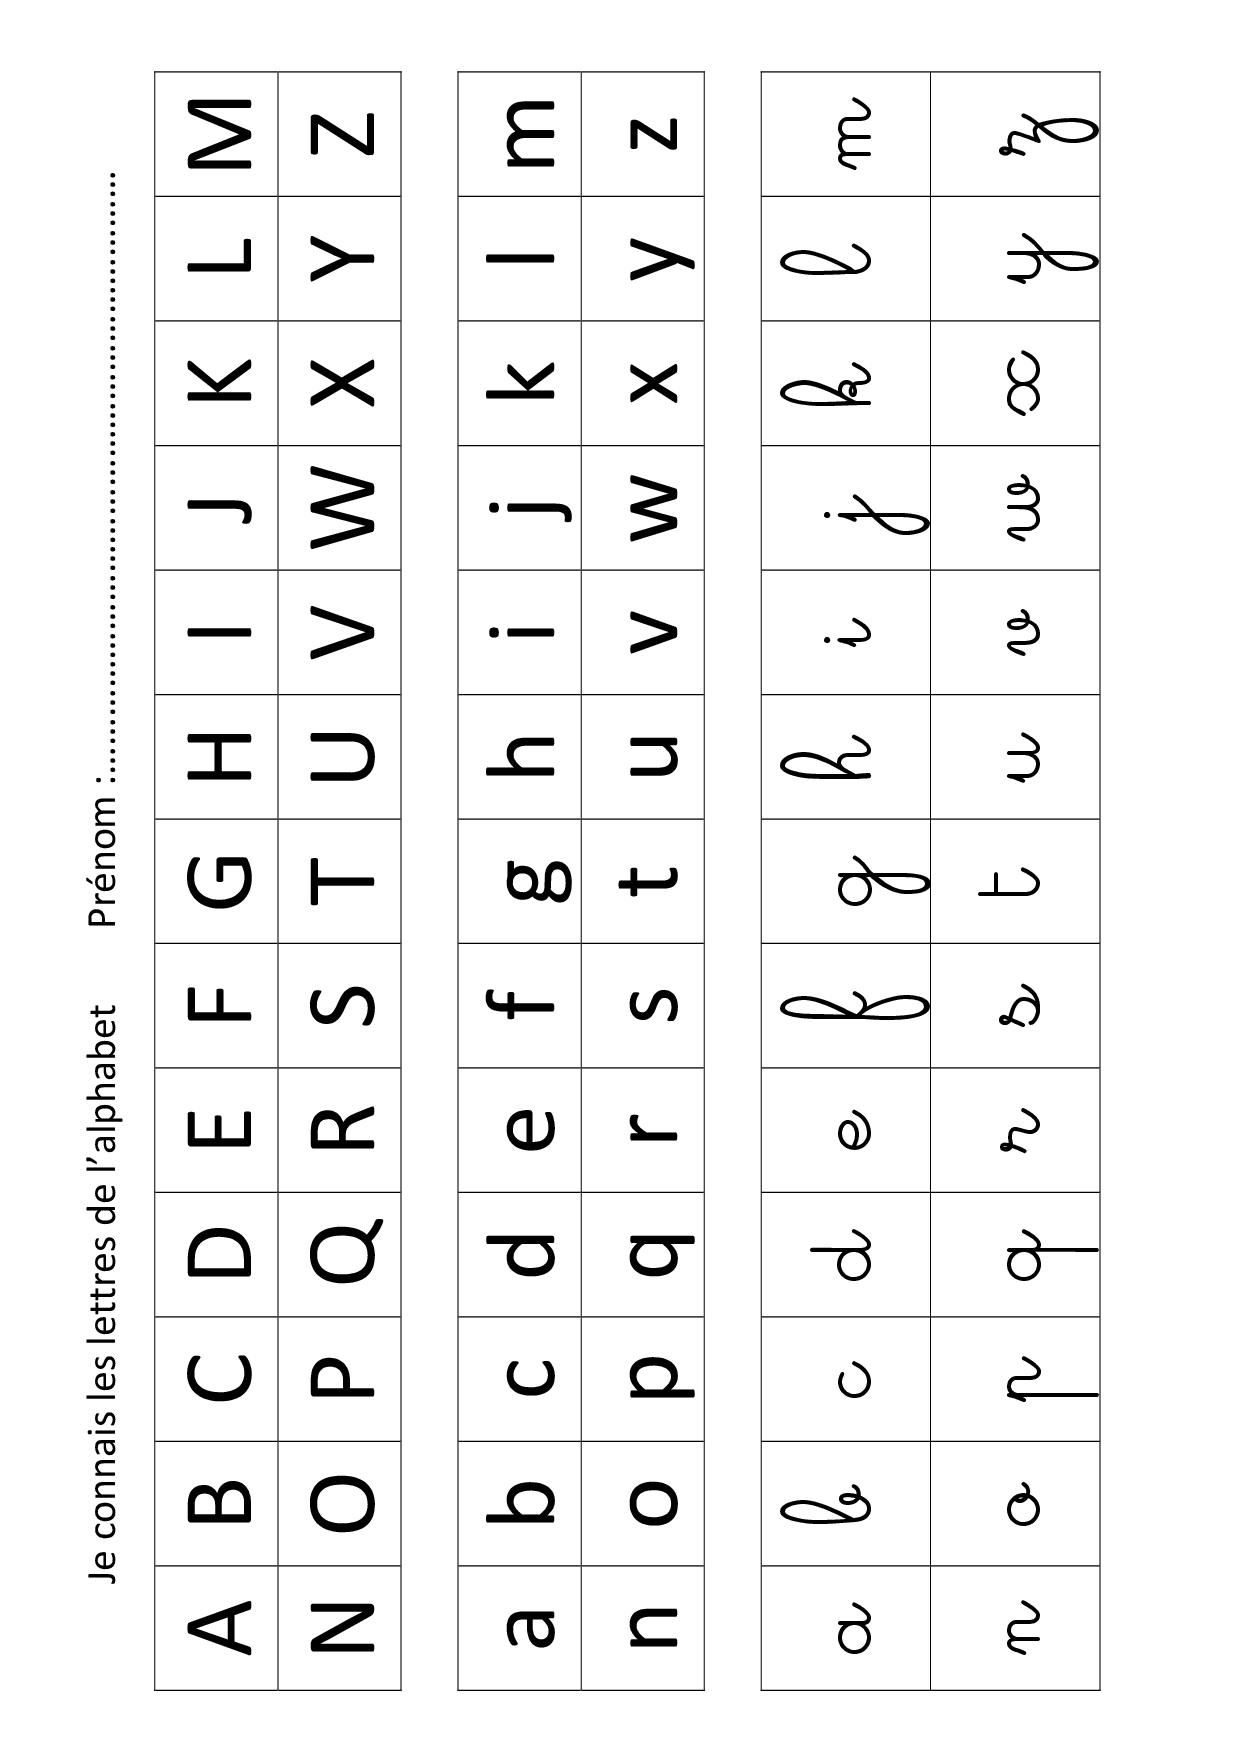 Apprendre A Écrire L Alphabet - Primanyc encequiconcerne Apprendre A Ecrire L Alphabet